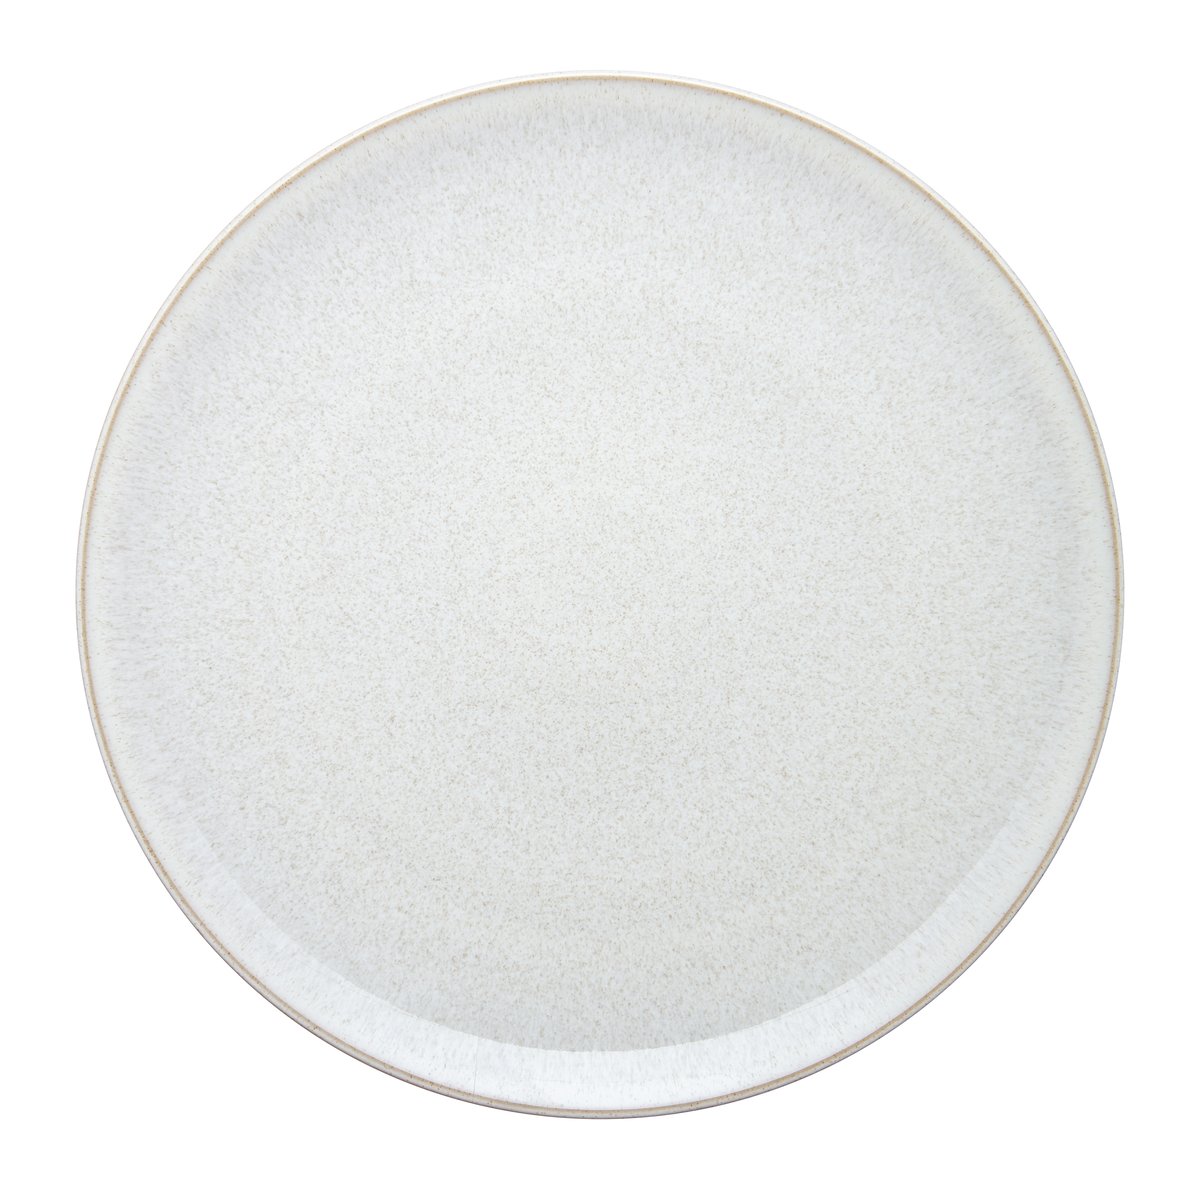 denby assiette modus speckle 27,5 cm blanc